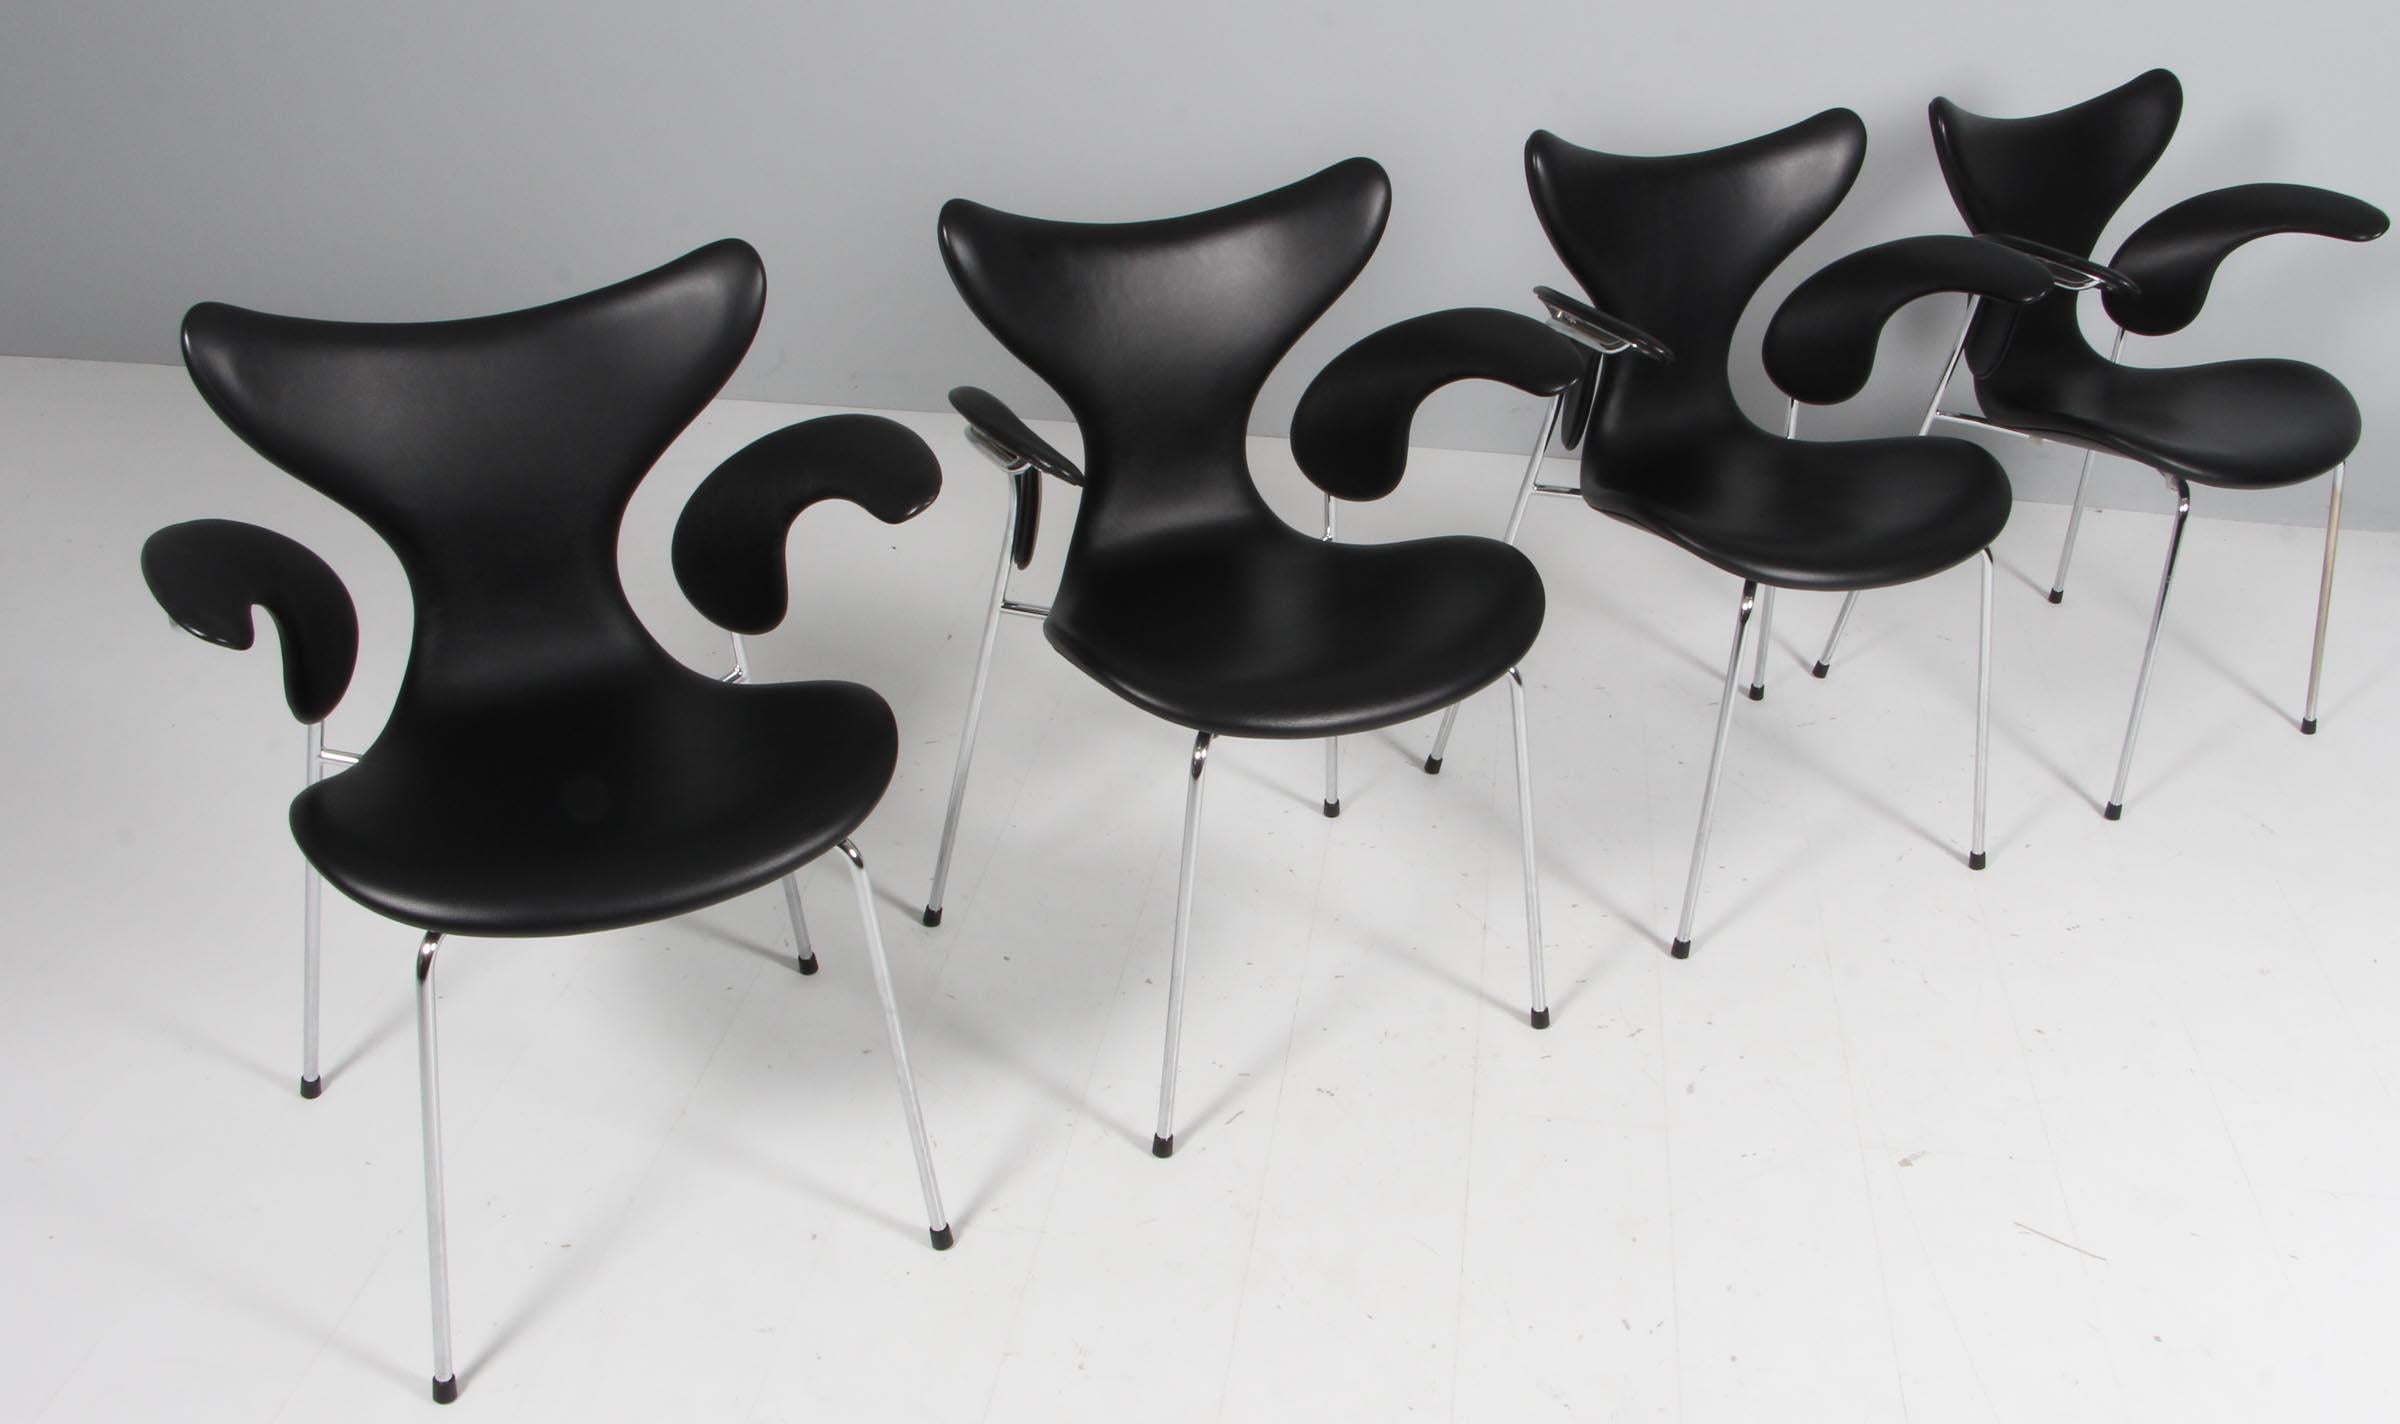 Fauteuil de salle à manger Arne Jacobsen original tapissé de cuir noir.

Base en tube d'acier chromé.

Modèle 3208 Seagull, fabriqué par Fritz Hansen en 2016. Label brun